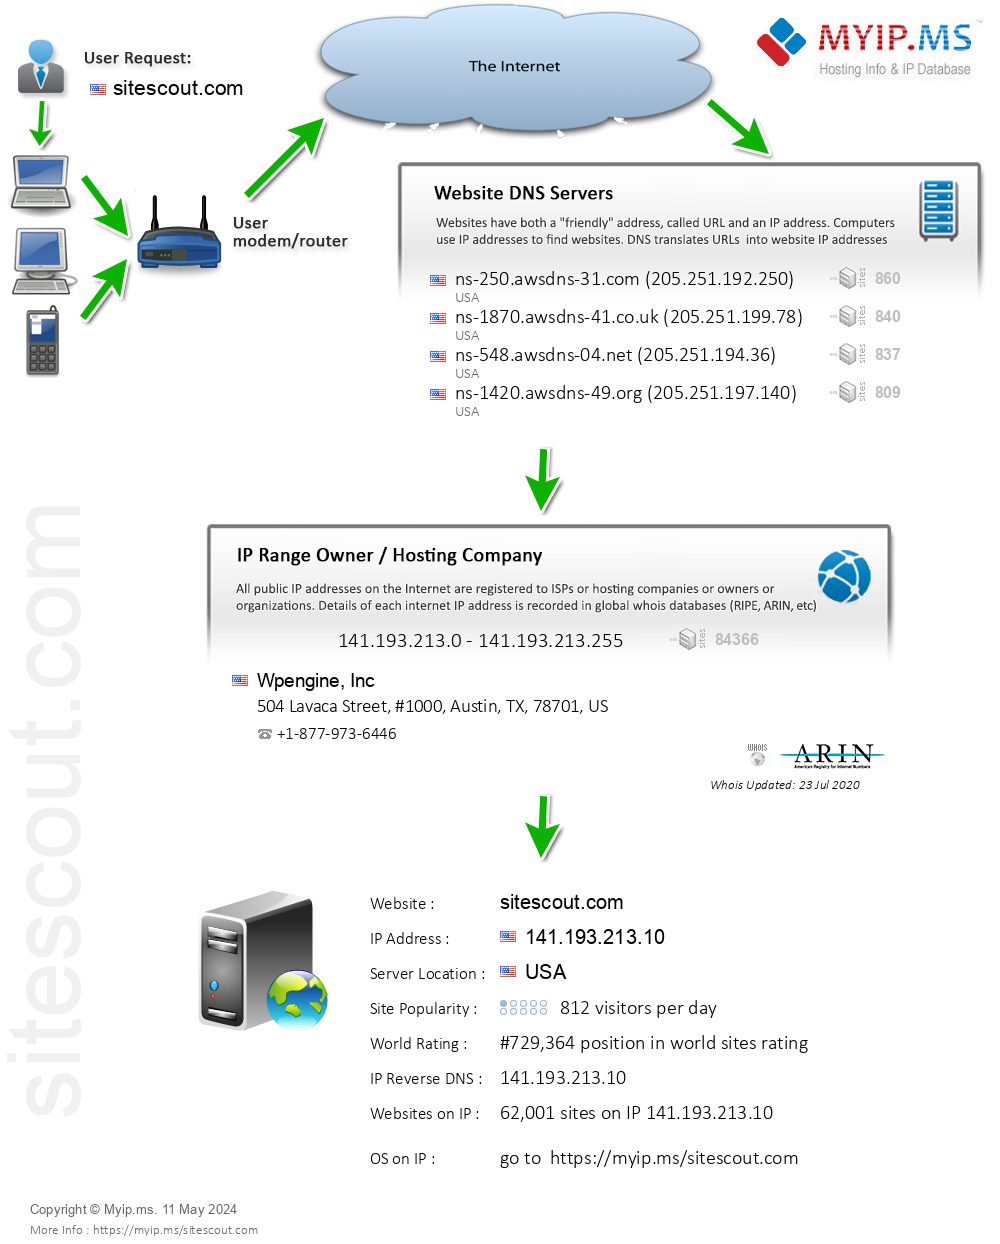 Sitescout.com - Website Hosting Visual IP Diagram